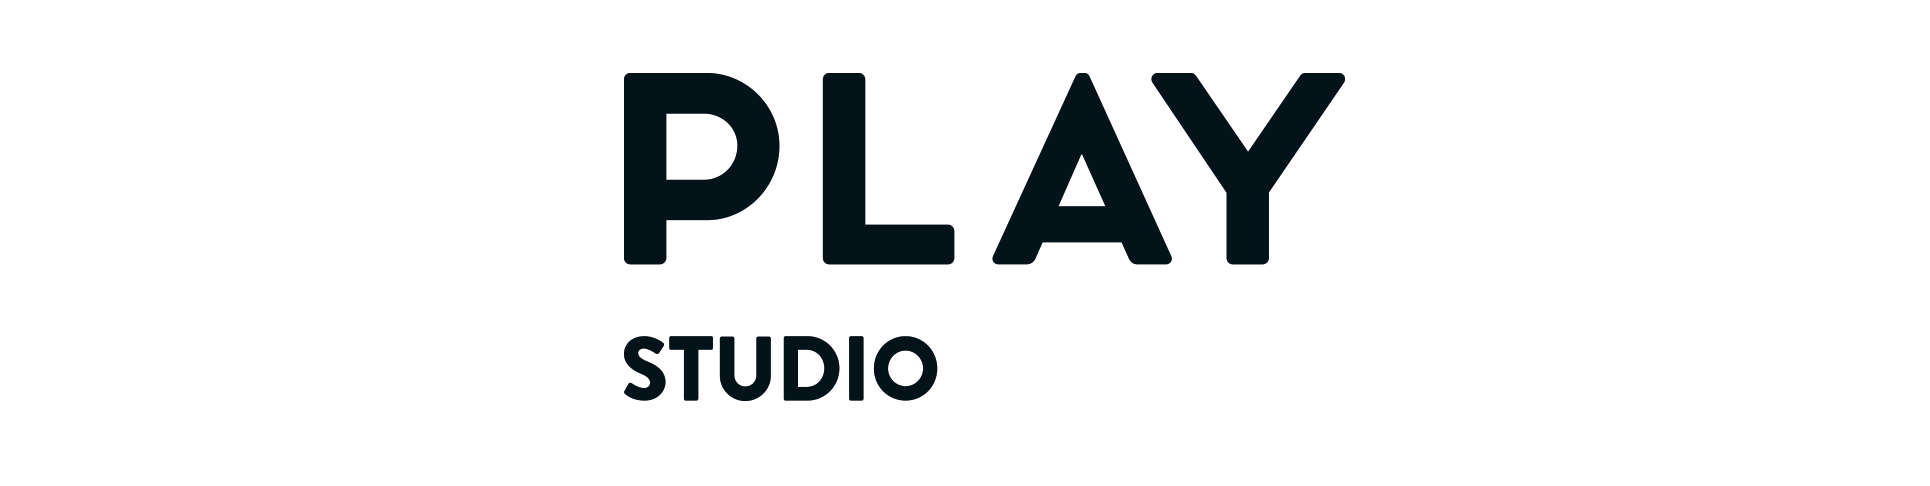 様々なライブ配信サービスと動画配信プラットフォームに対応する レンタルスタジオ「PLAY STUDIO」を提供開始 | PLAY, inc.